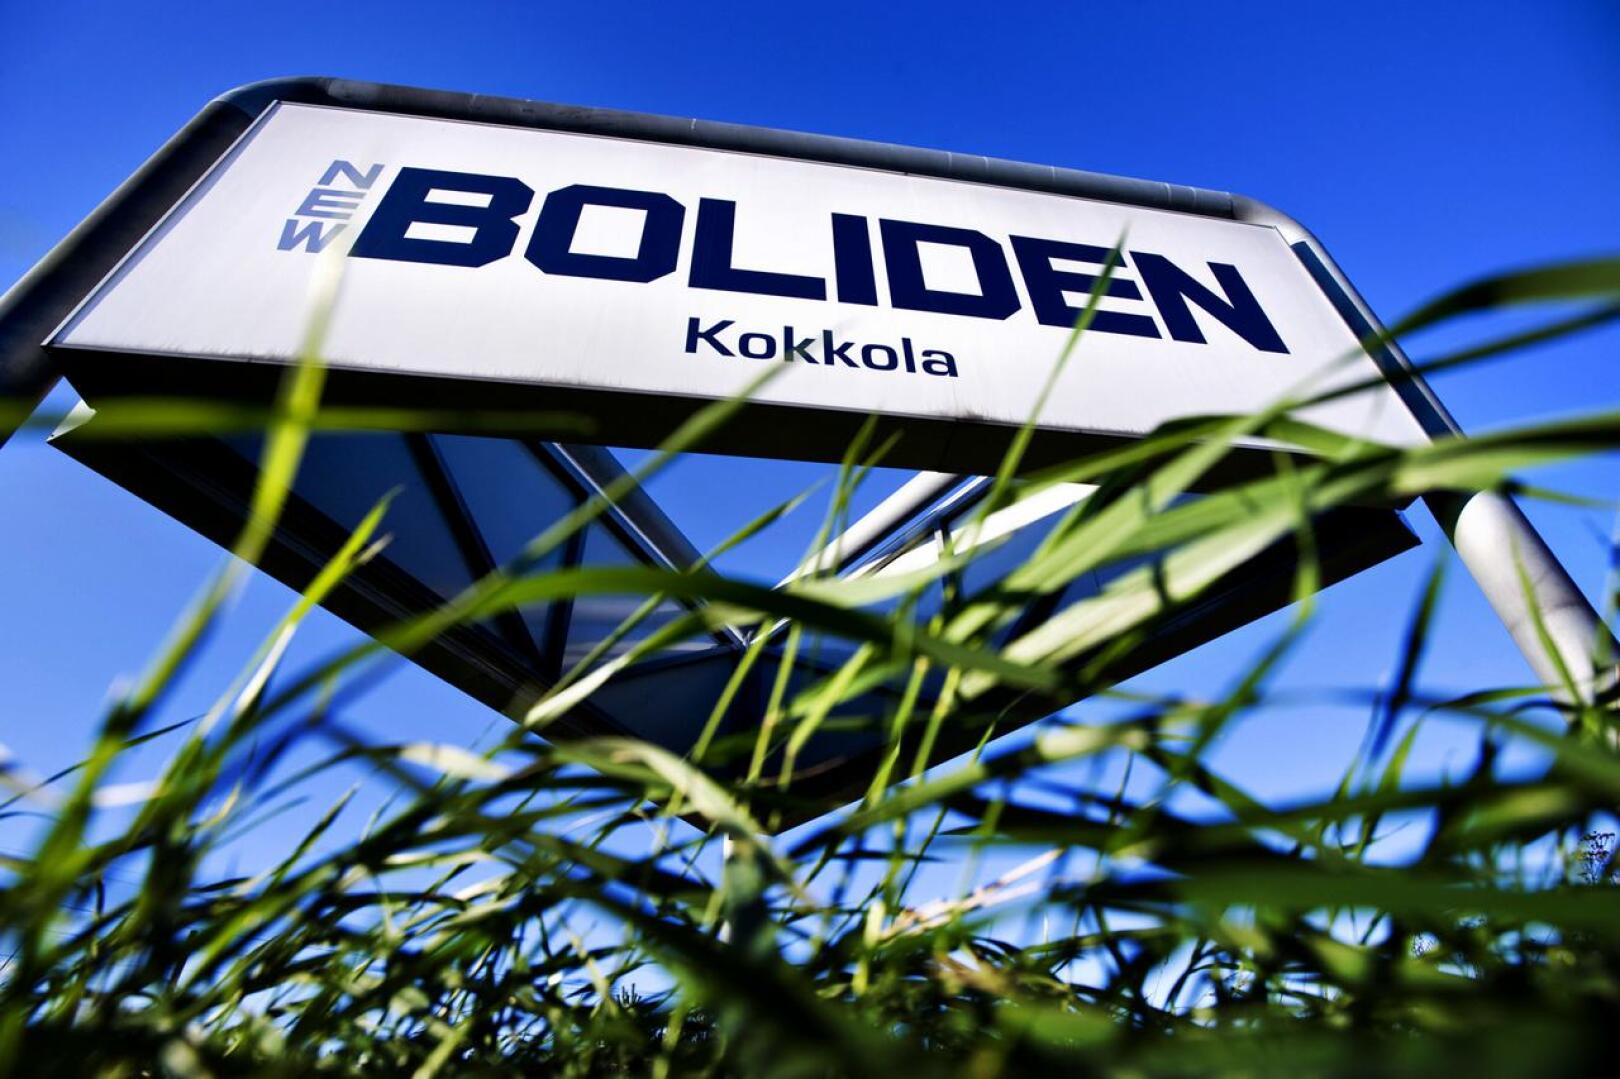 Bolidenin kaatopaikka sijaitsee Kokkolan suurteollisuusalueen pohjoispuolella.